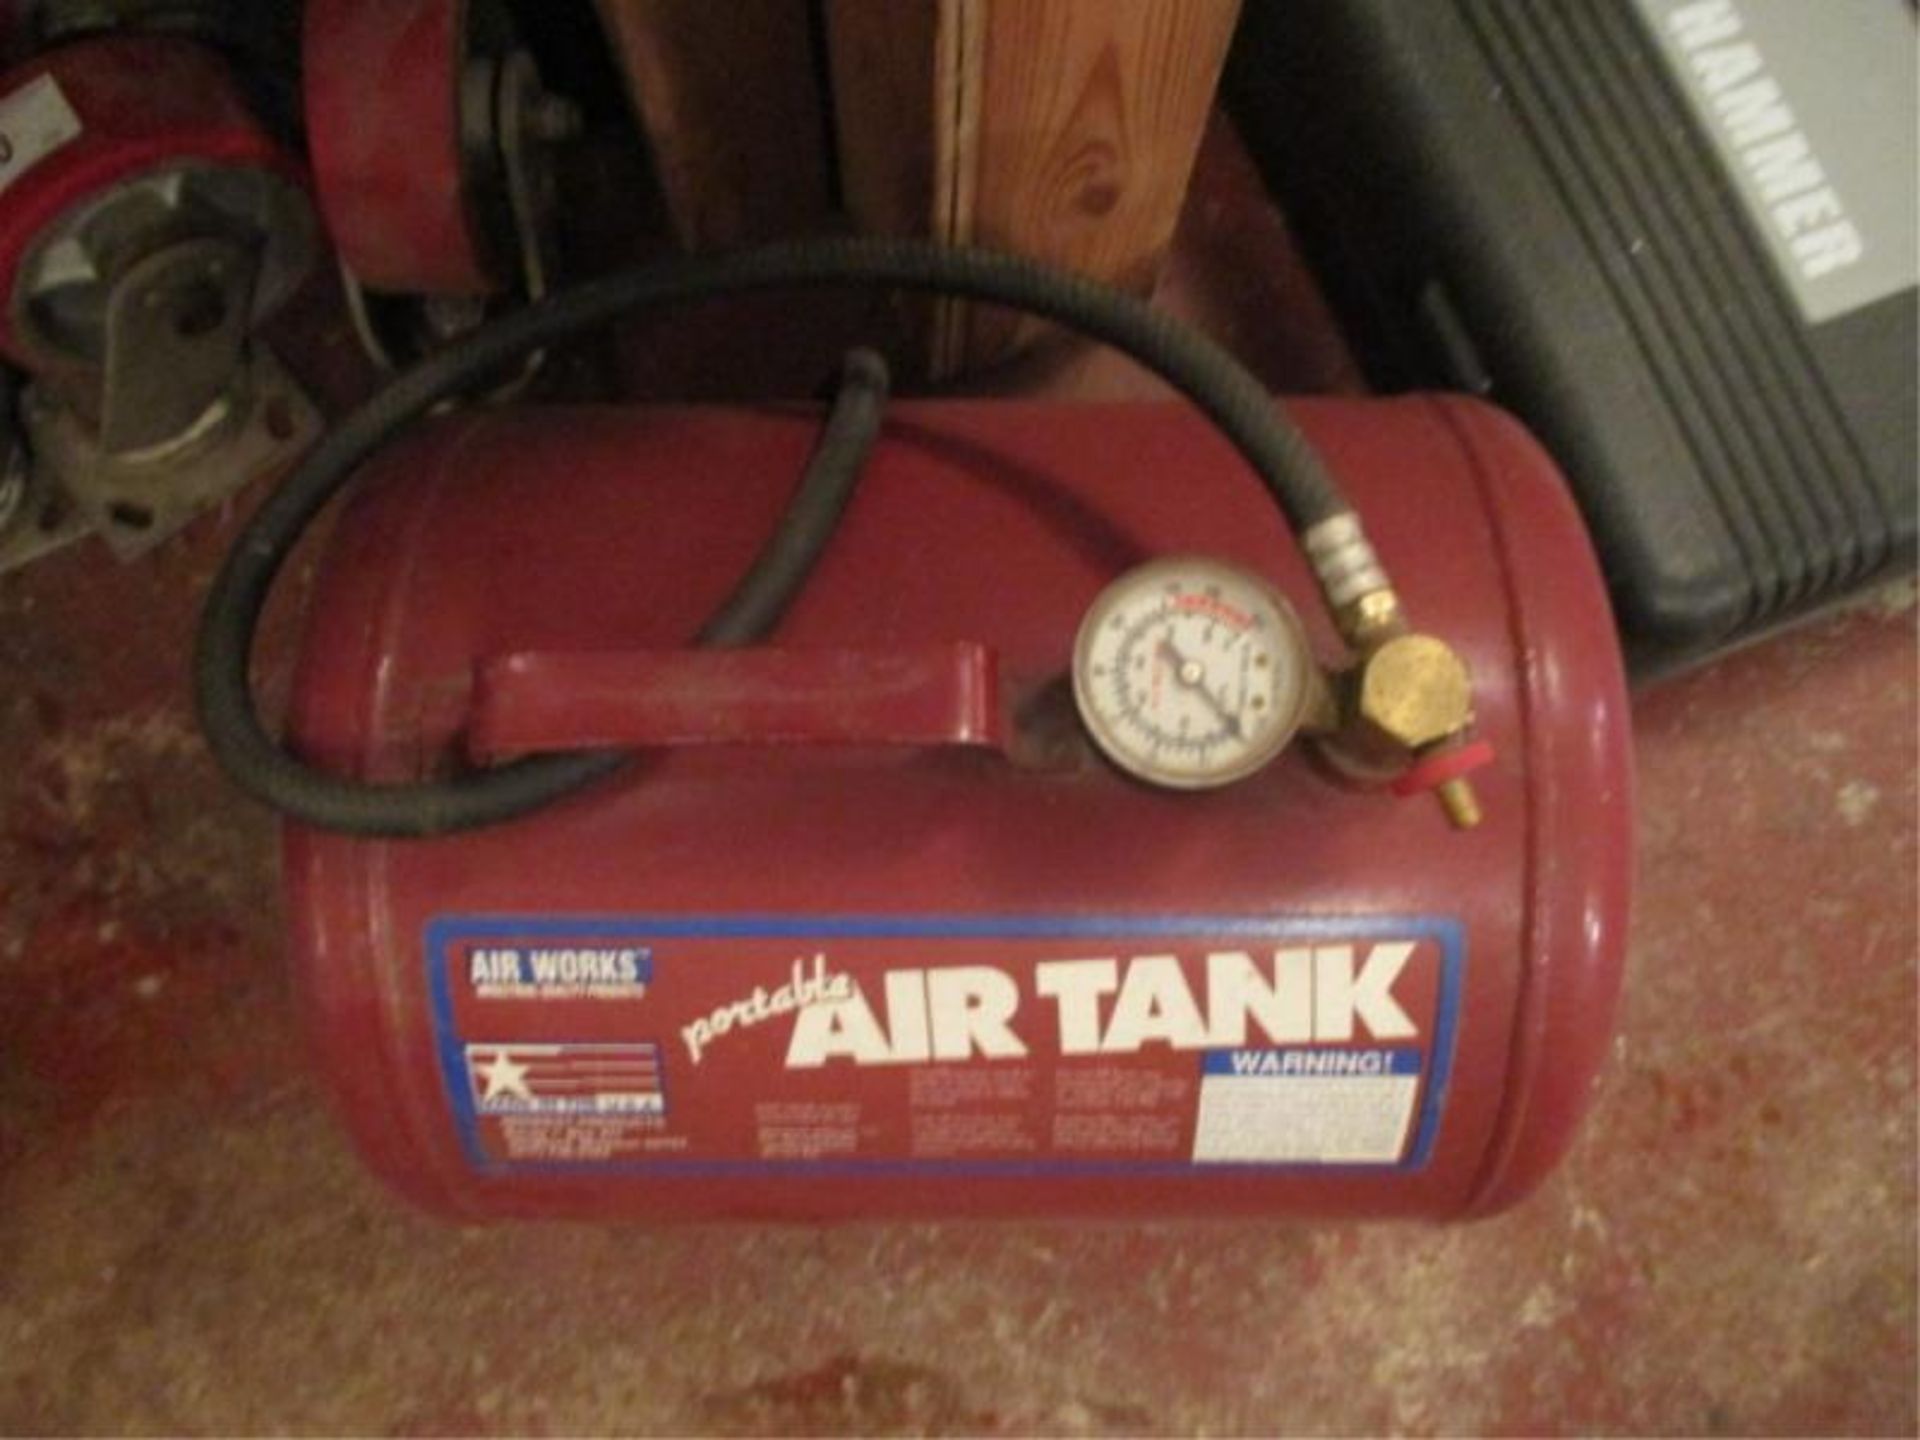 Air Works Portable Air Tank